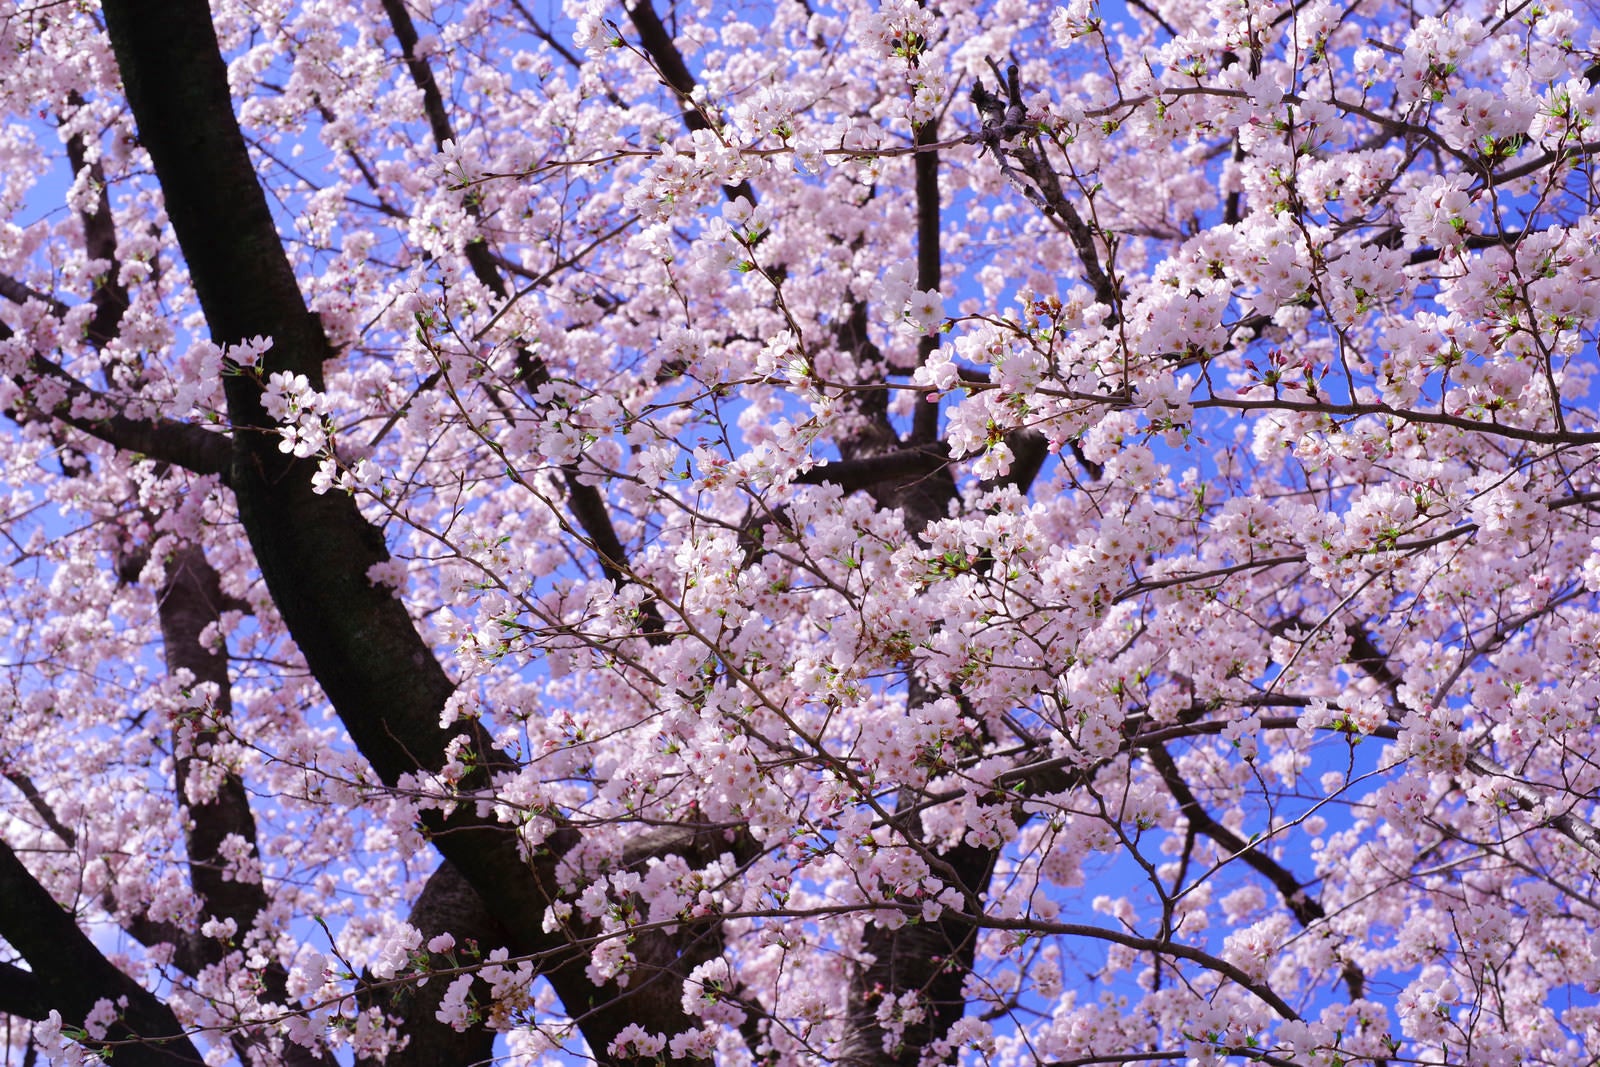 「春が来て満開に咲き誇るソメイヨシノ」の写真